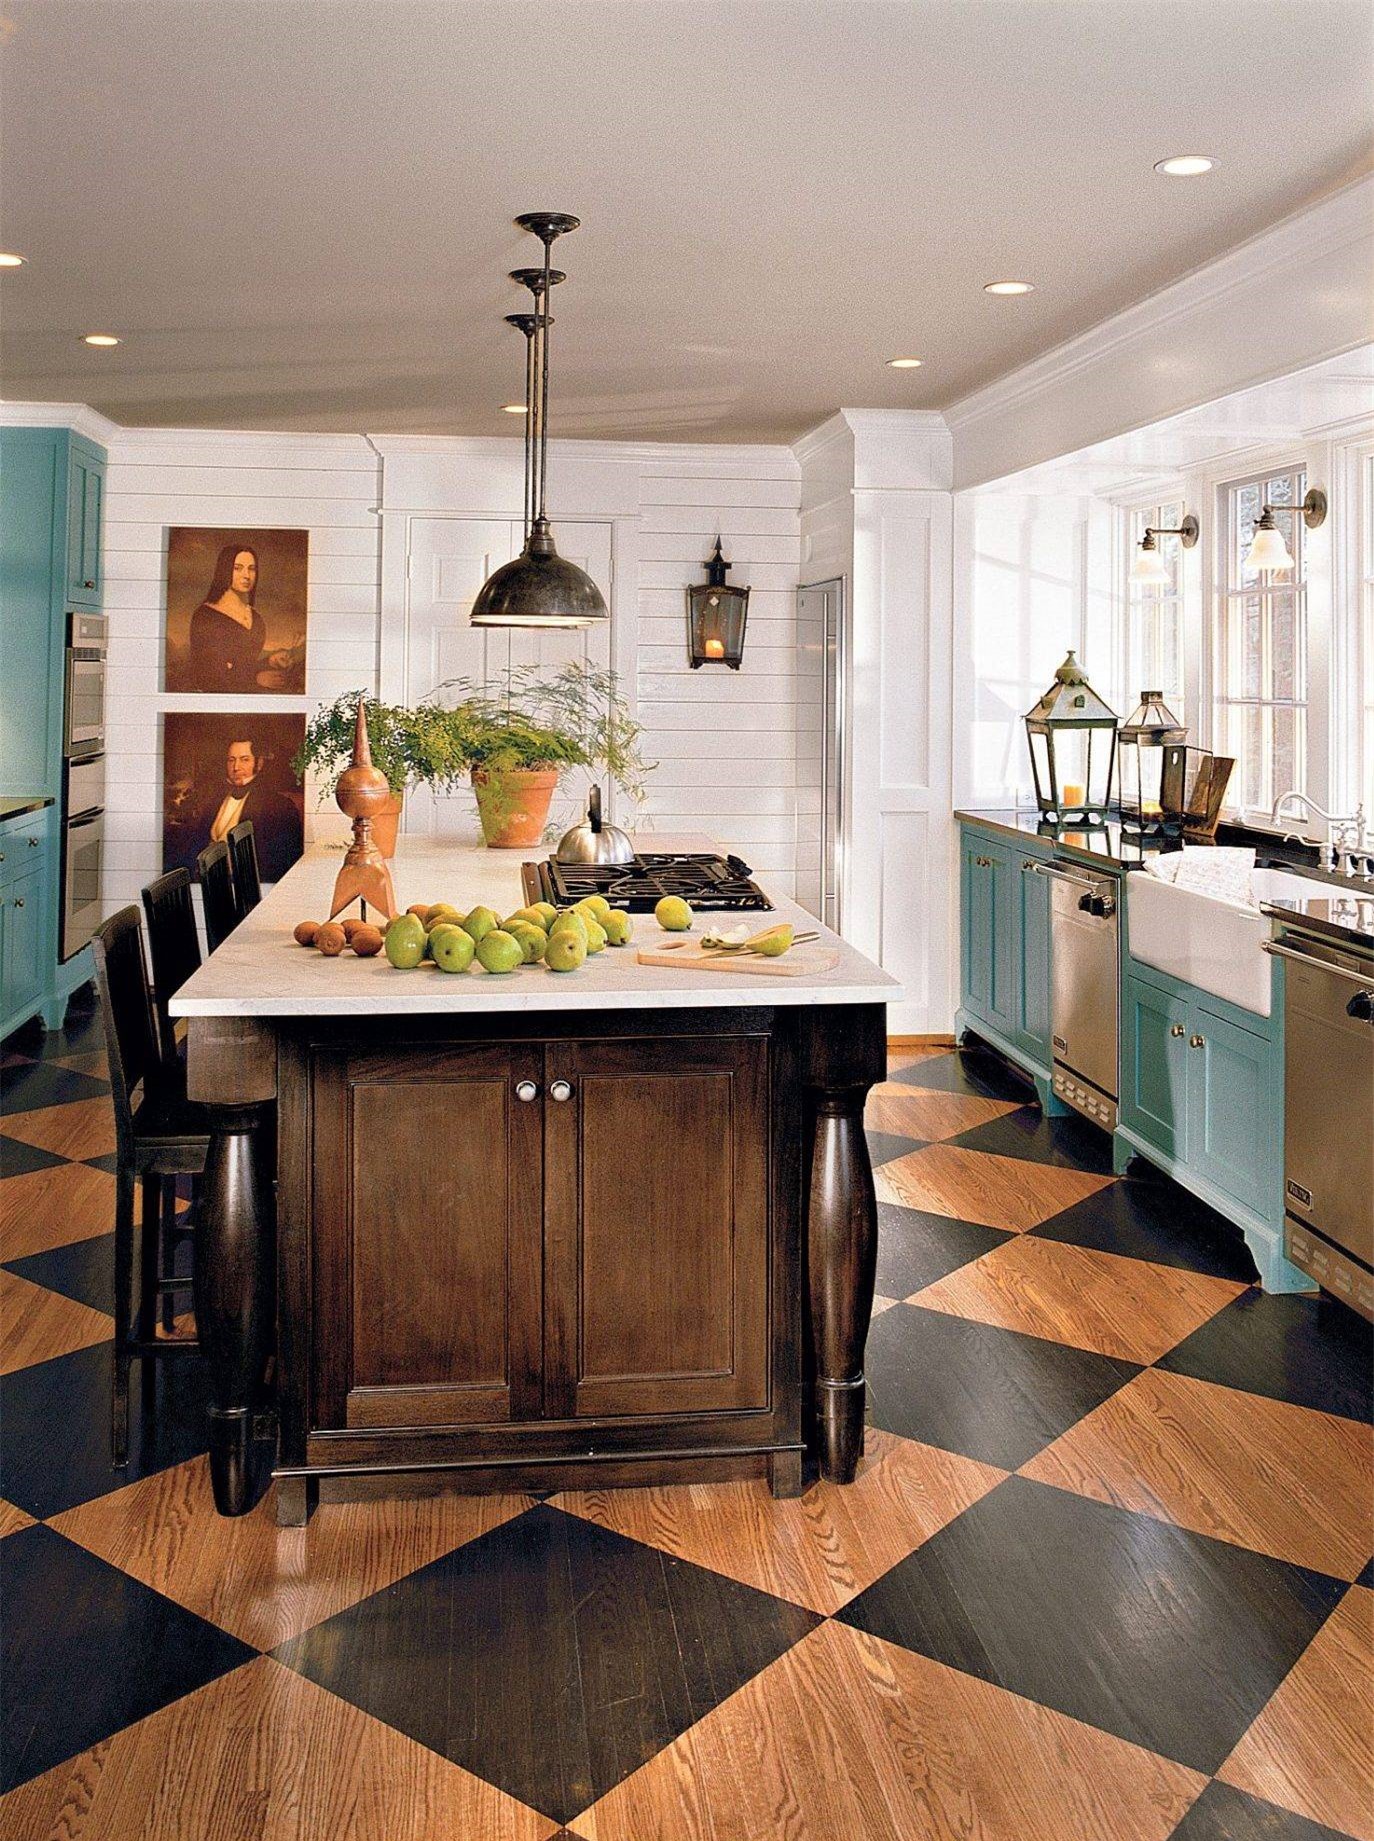 Căn bếp nhỏ được thiết kế khéo léo khi kết hợp những sắc màu trẻ trung. Không gian nấu nướng ghi điểm với hệ tủ bếp màu xanh bạc hà. Màu tường trắng giúp các gam màu trầm thêm nổi bật.